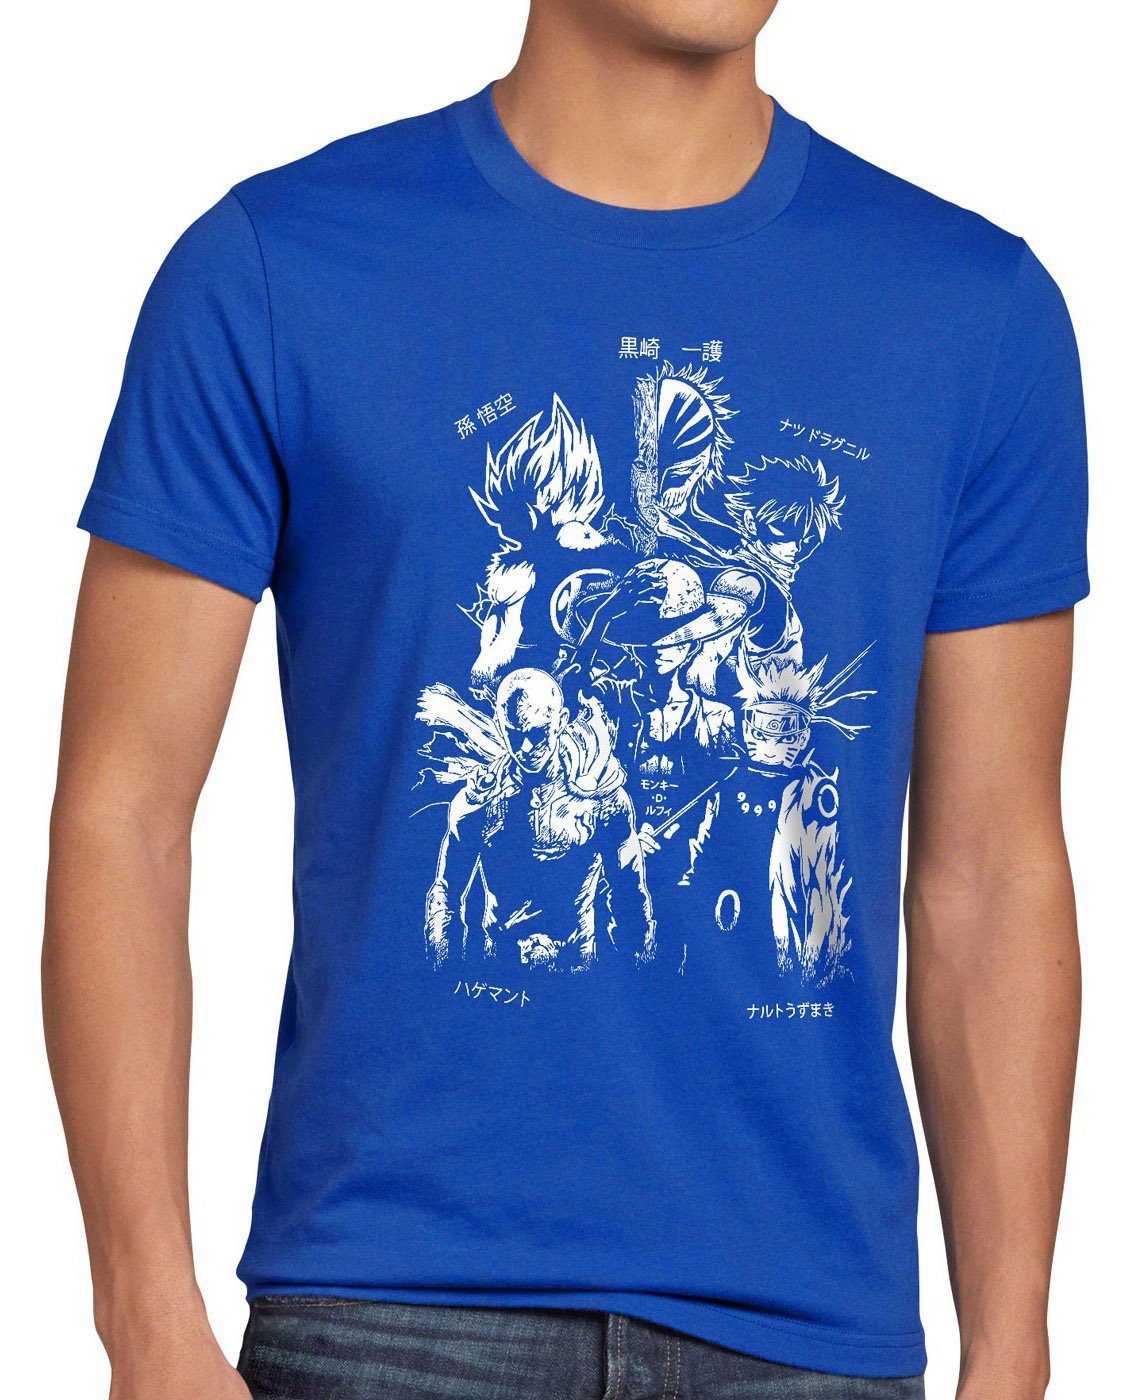 [Wird zu einem supergünstigen Preis angeboten!] style3 Print-Shirt Herren T-Shirt piece blau punch luffy ball dragon son goku Heroes saitama fairy Anime